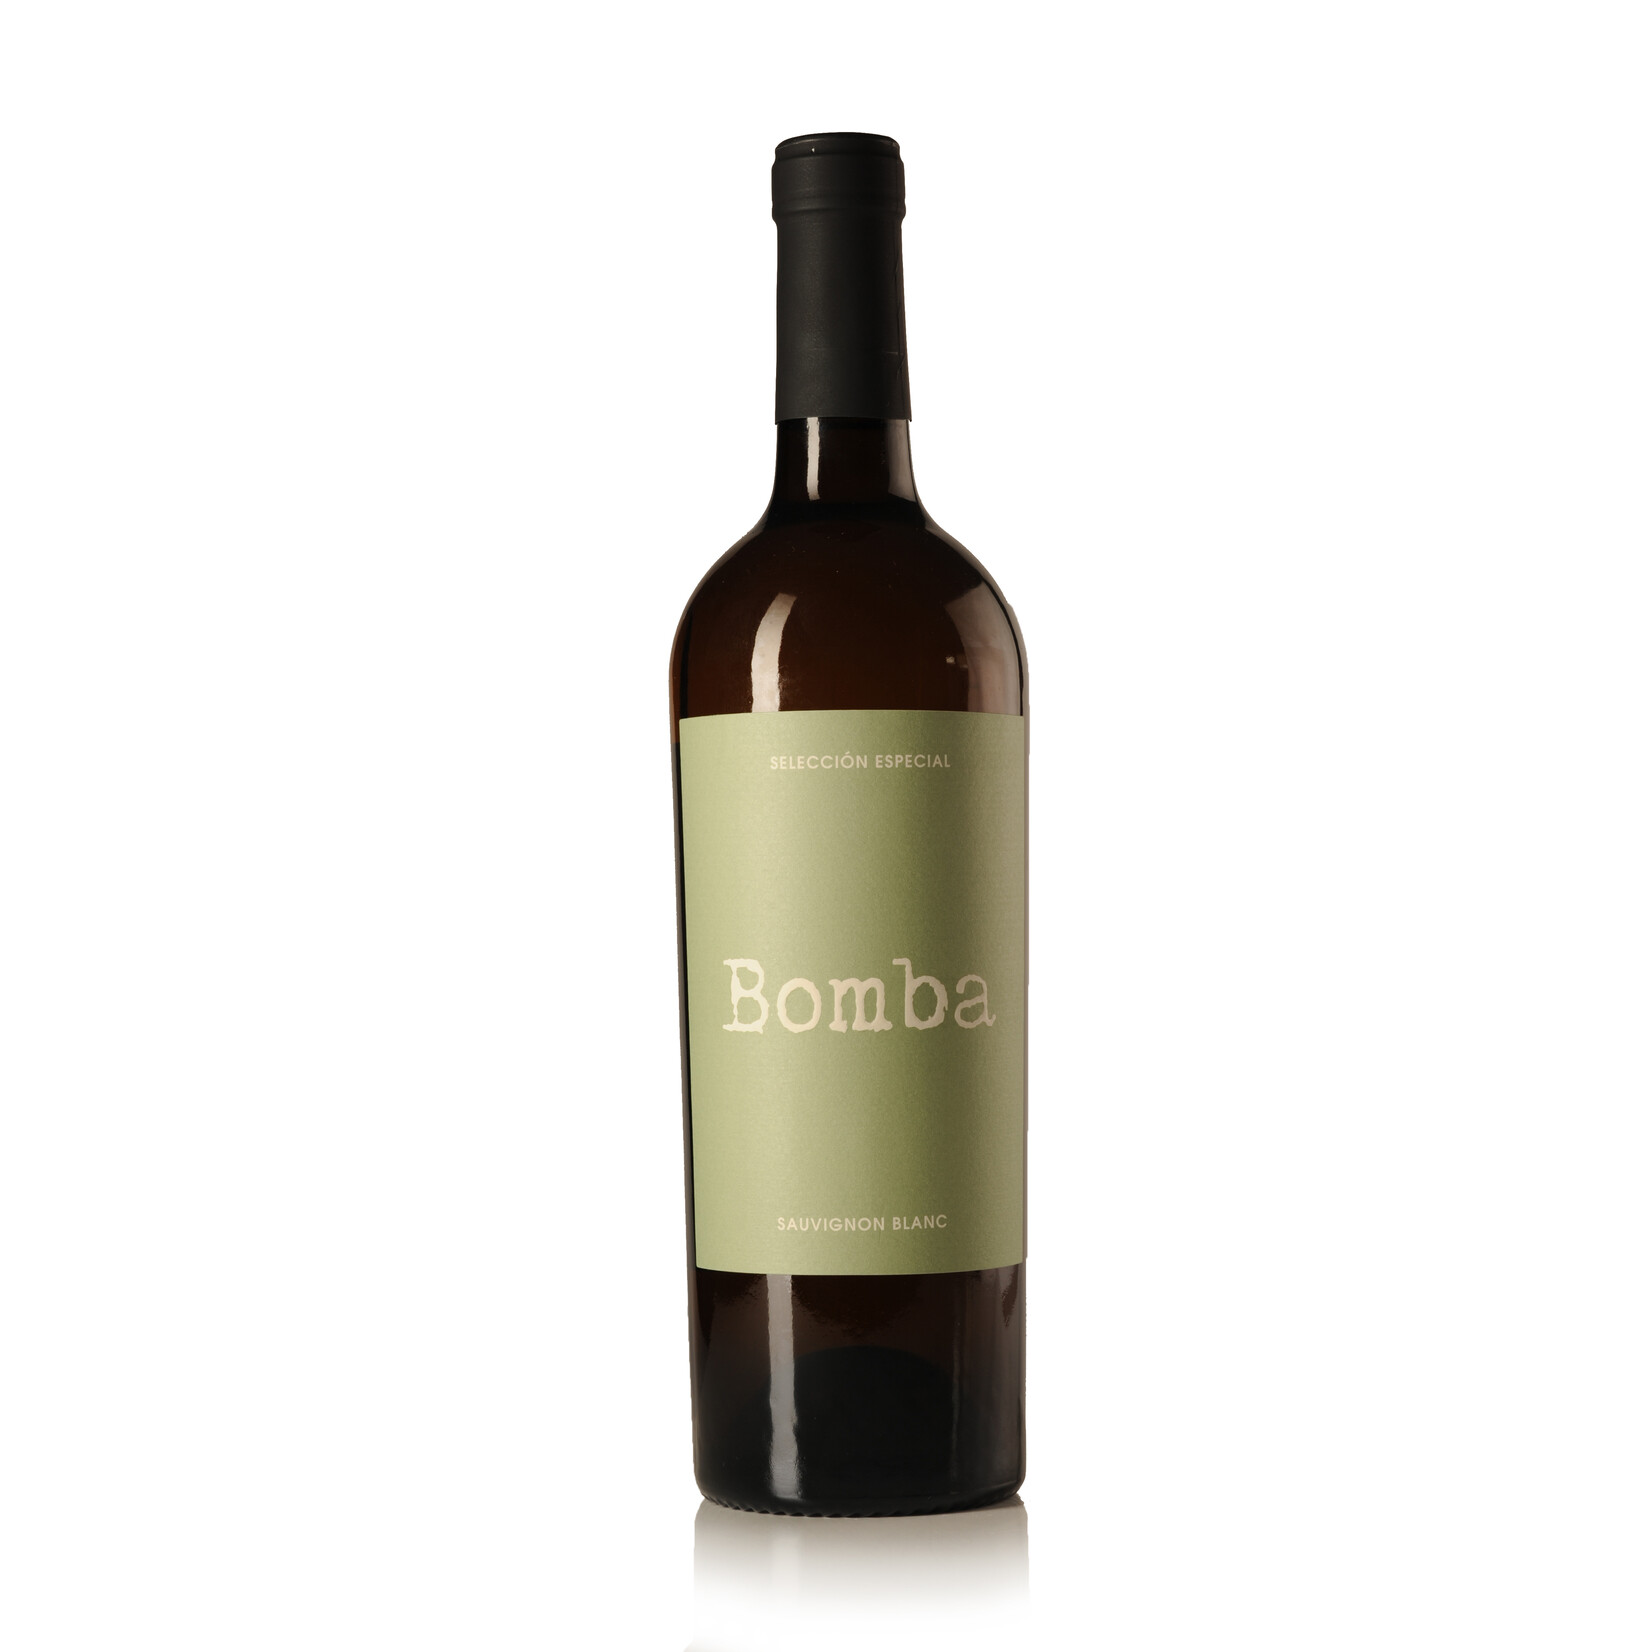 Bomba Sauvignon Blanc Seleccion Especial